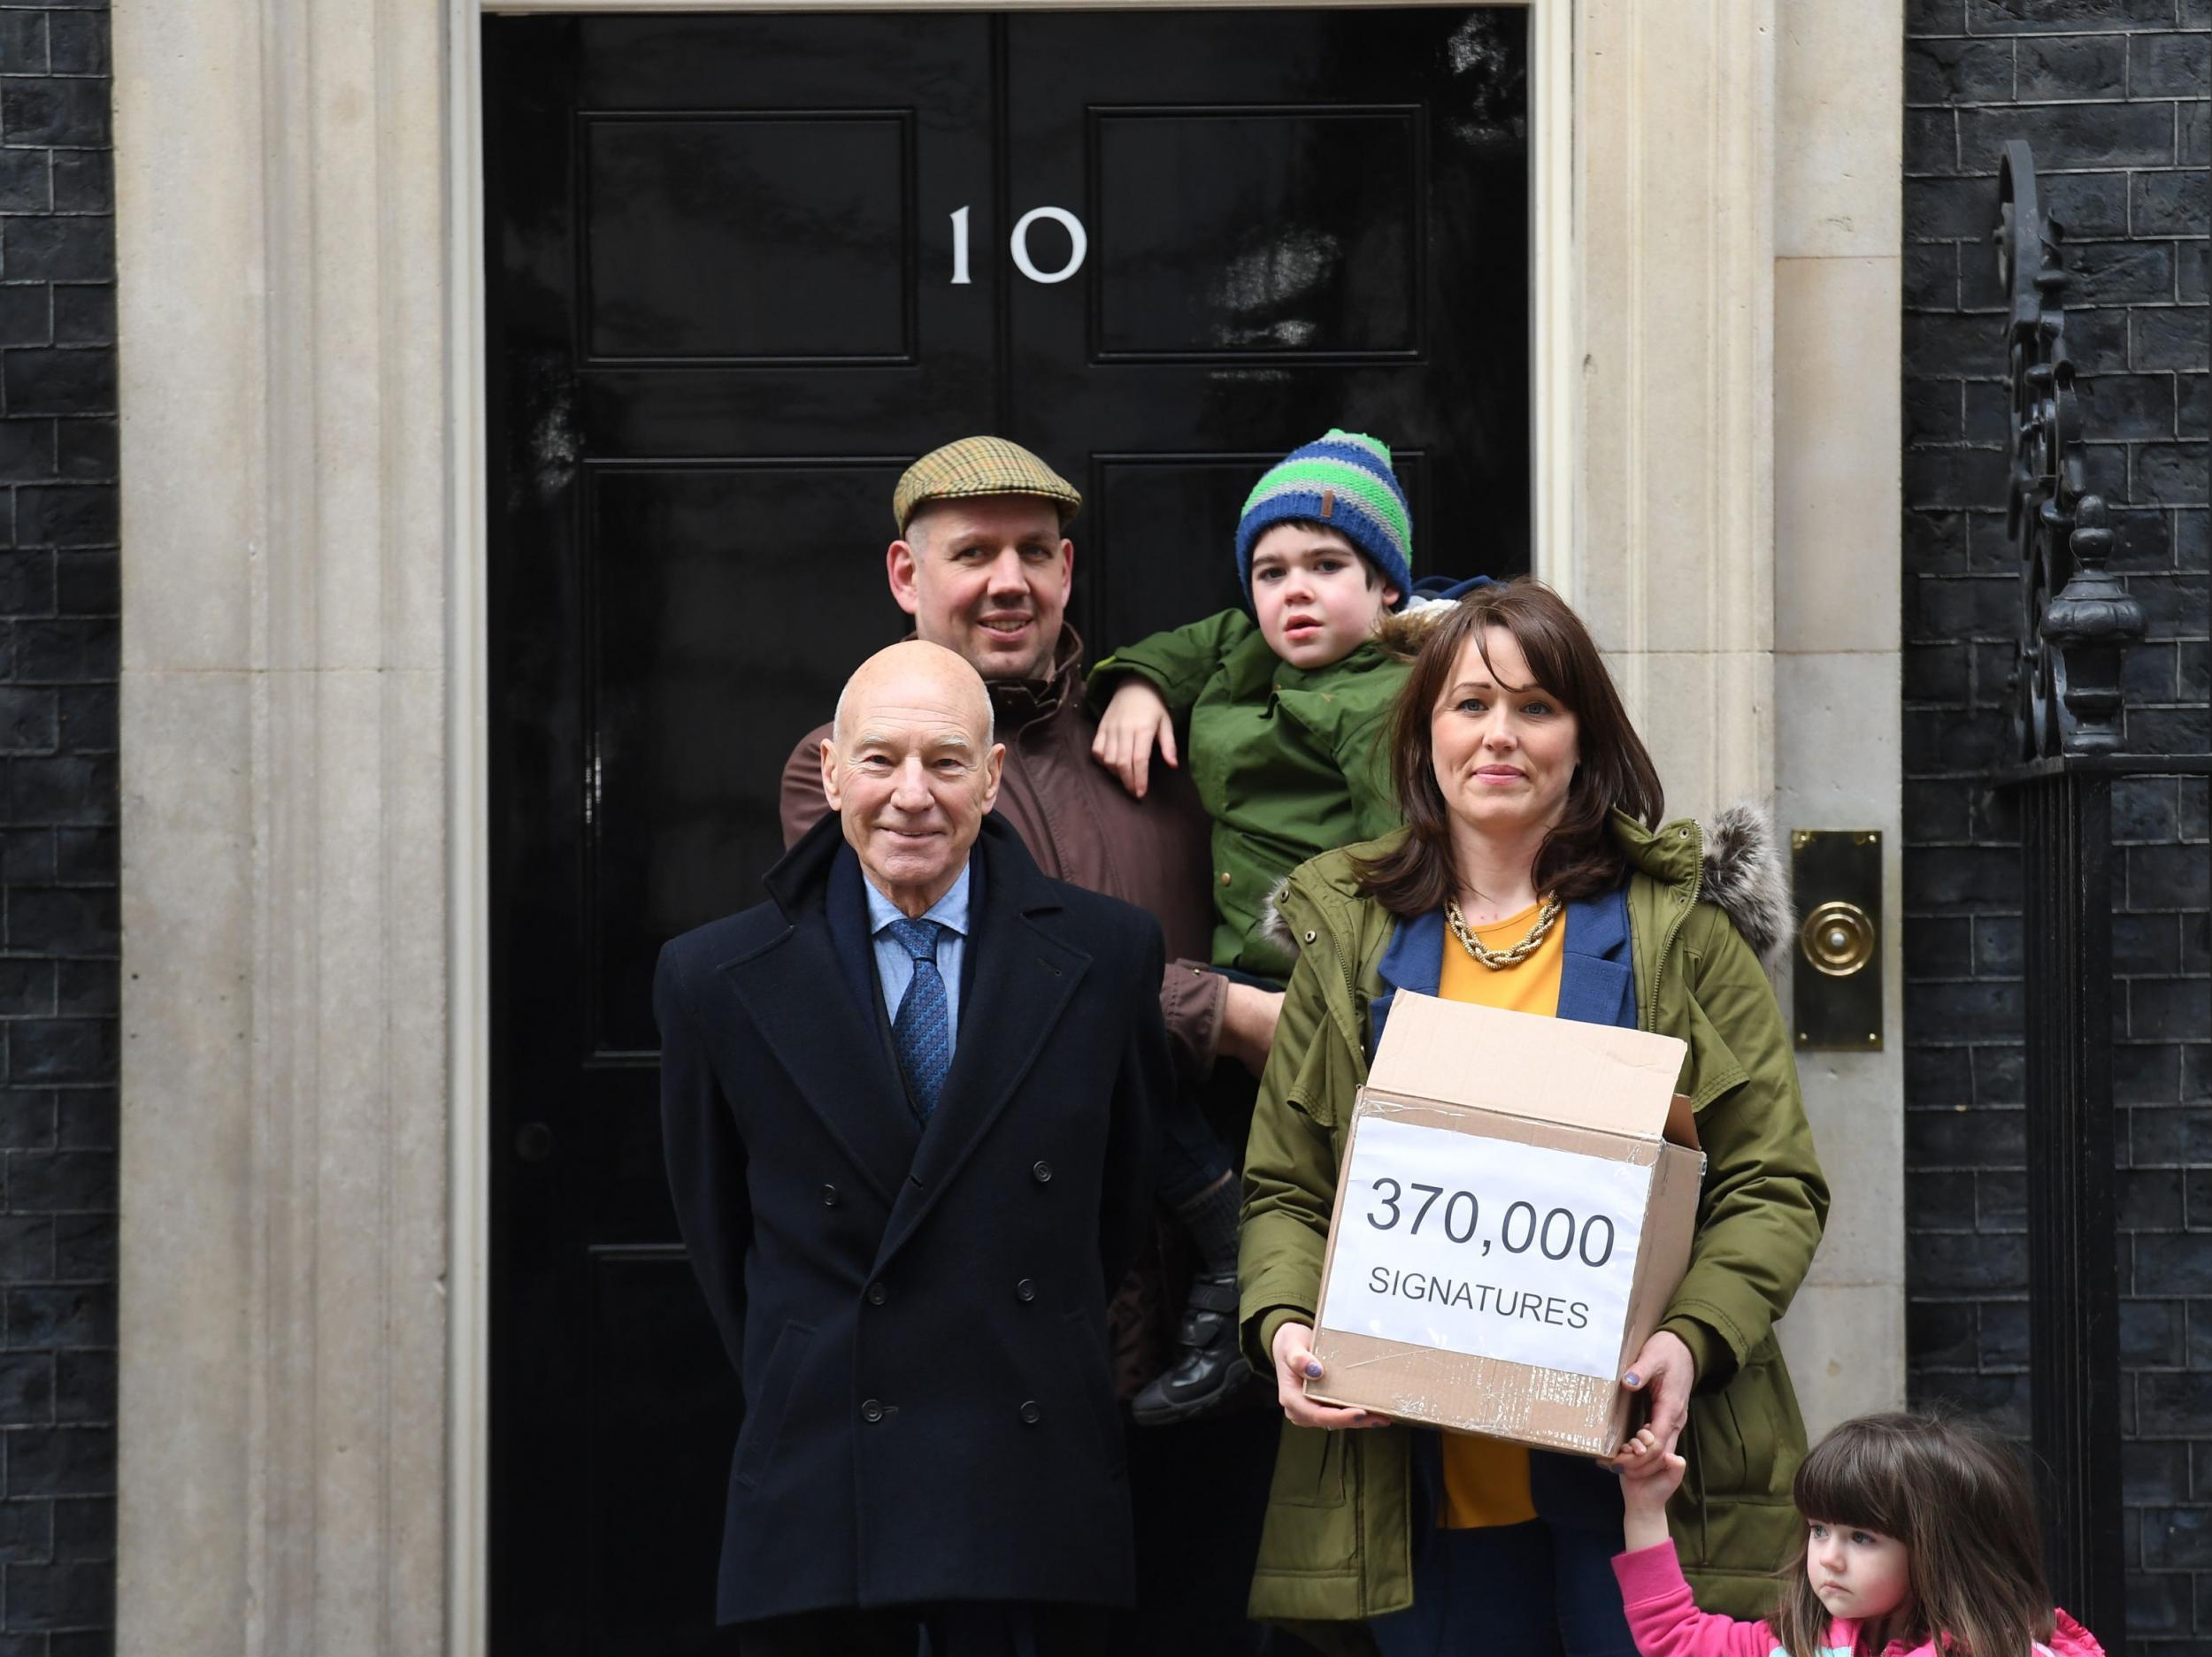 Alfie Dingley de seis años, sus padres Drew Dingley y Hannah Deacon y el actor Sir Patrick Stewart (izquierda) caminan por Whitehall en Londres antes de entregar una petición al número 10 de Downing Street pidiendo que Alfie reciba cannabis medicinal para tratar su epilepsia. .